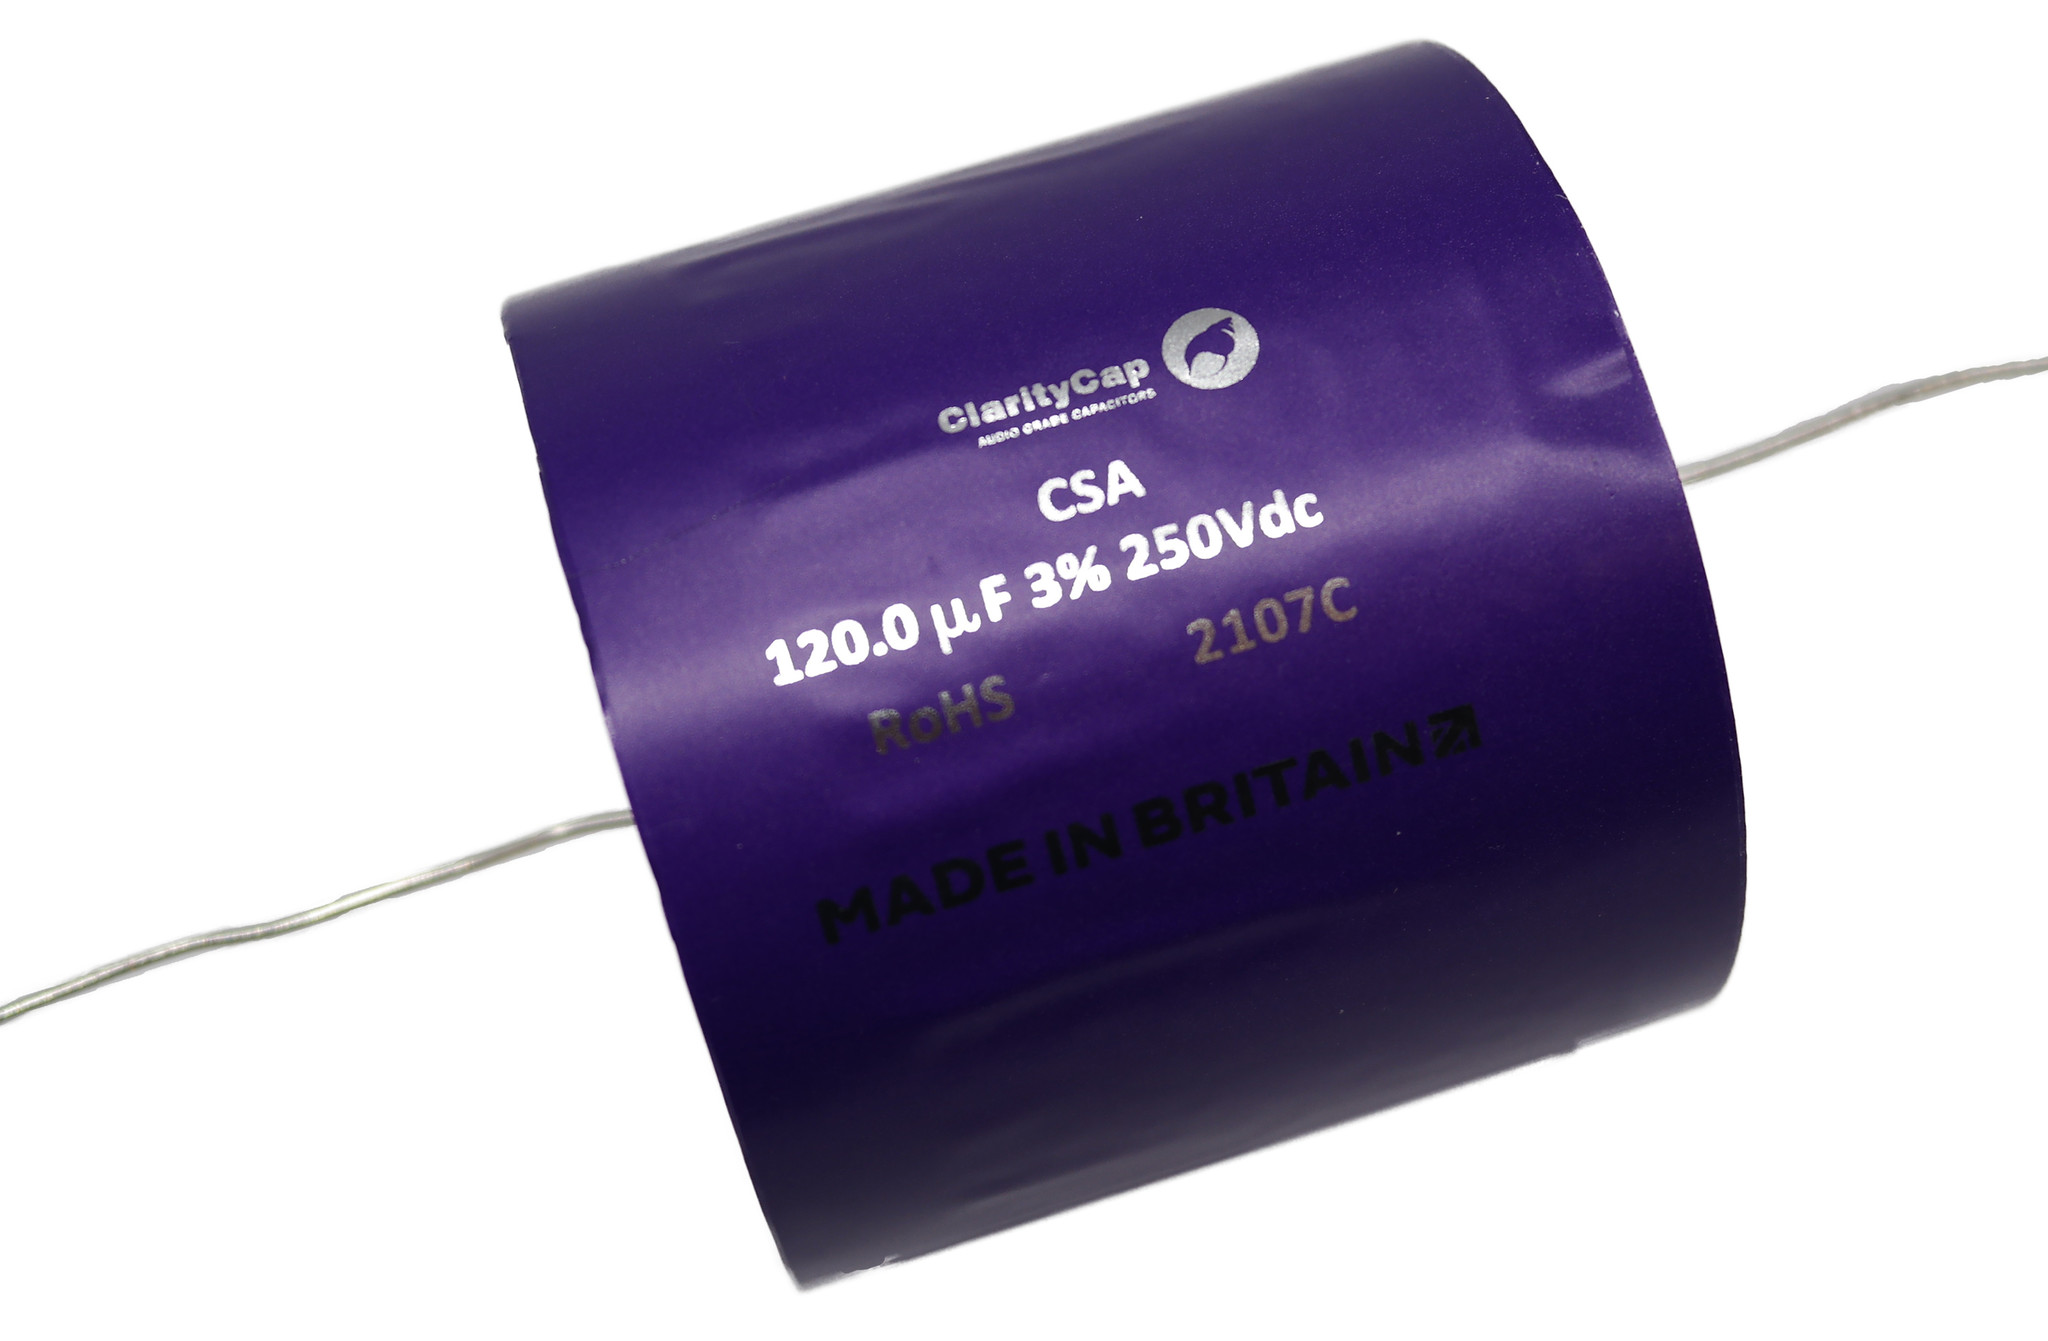 Condensatoare - Condensator film ClarityCap CSA120uH250Vdc| 120 µF | 3% | 250 V, audioclub.ro